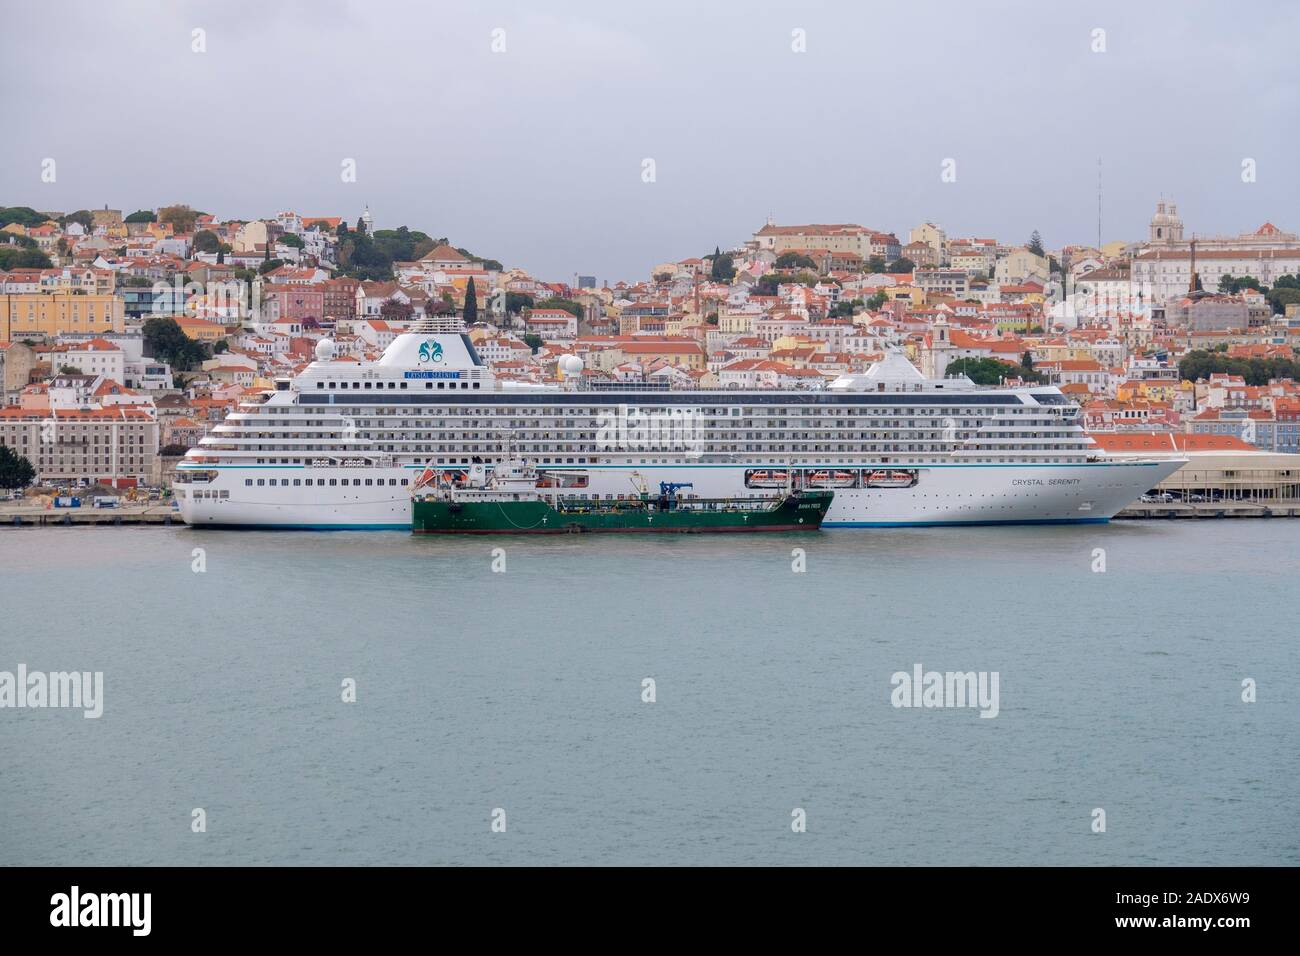 Öltanker die Betankung der Crystal Serenity Kreuzfahrtschiff Schiff im Hafen von Lissabon, Portugal, Europa Stockfoto